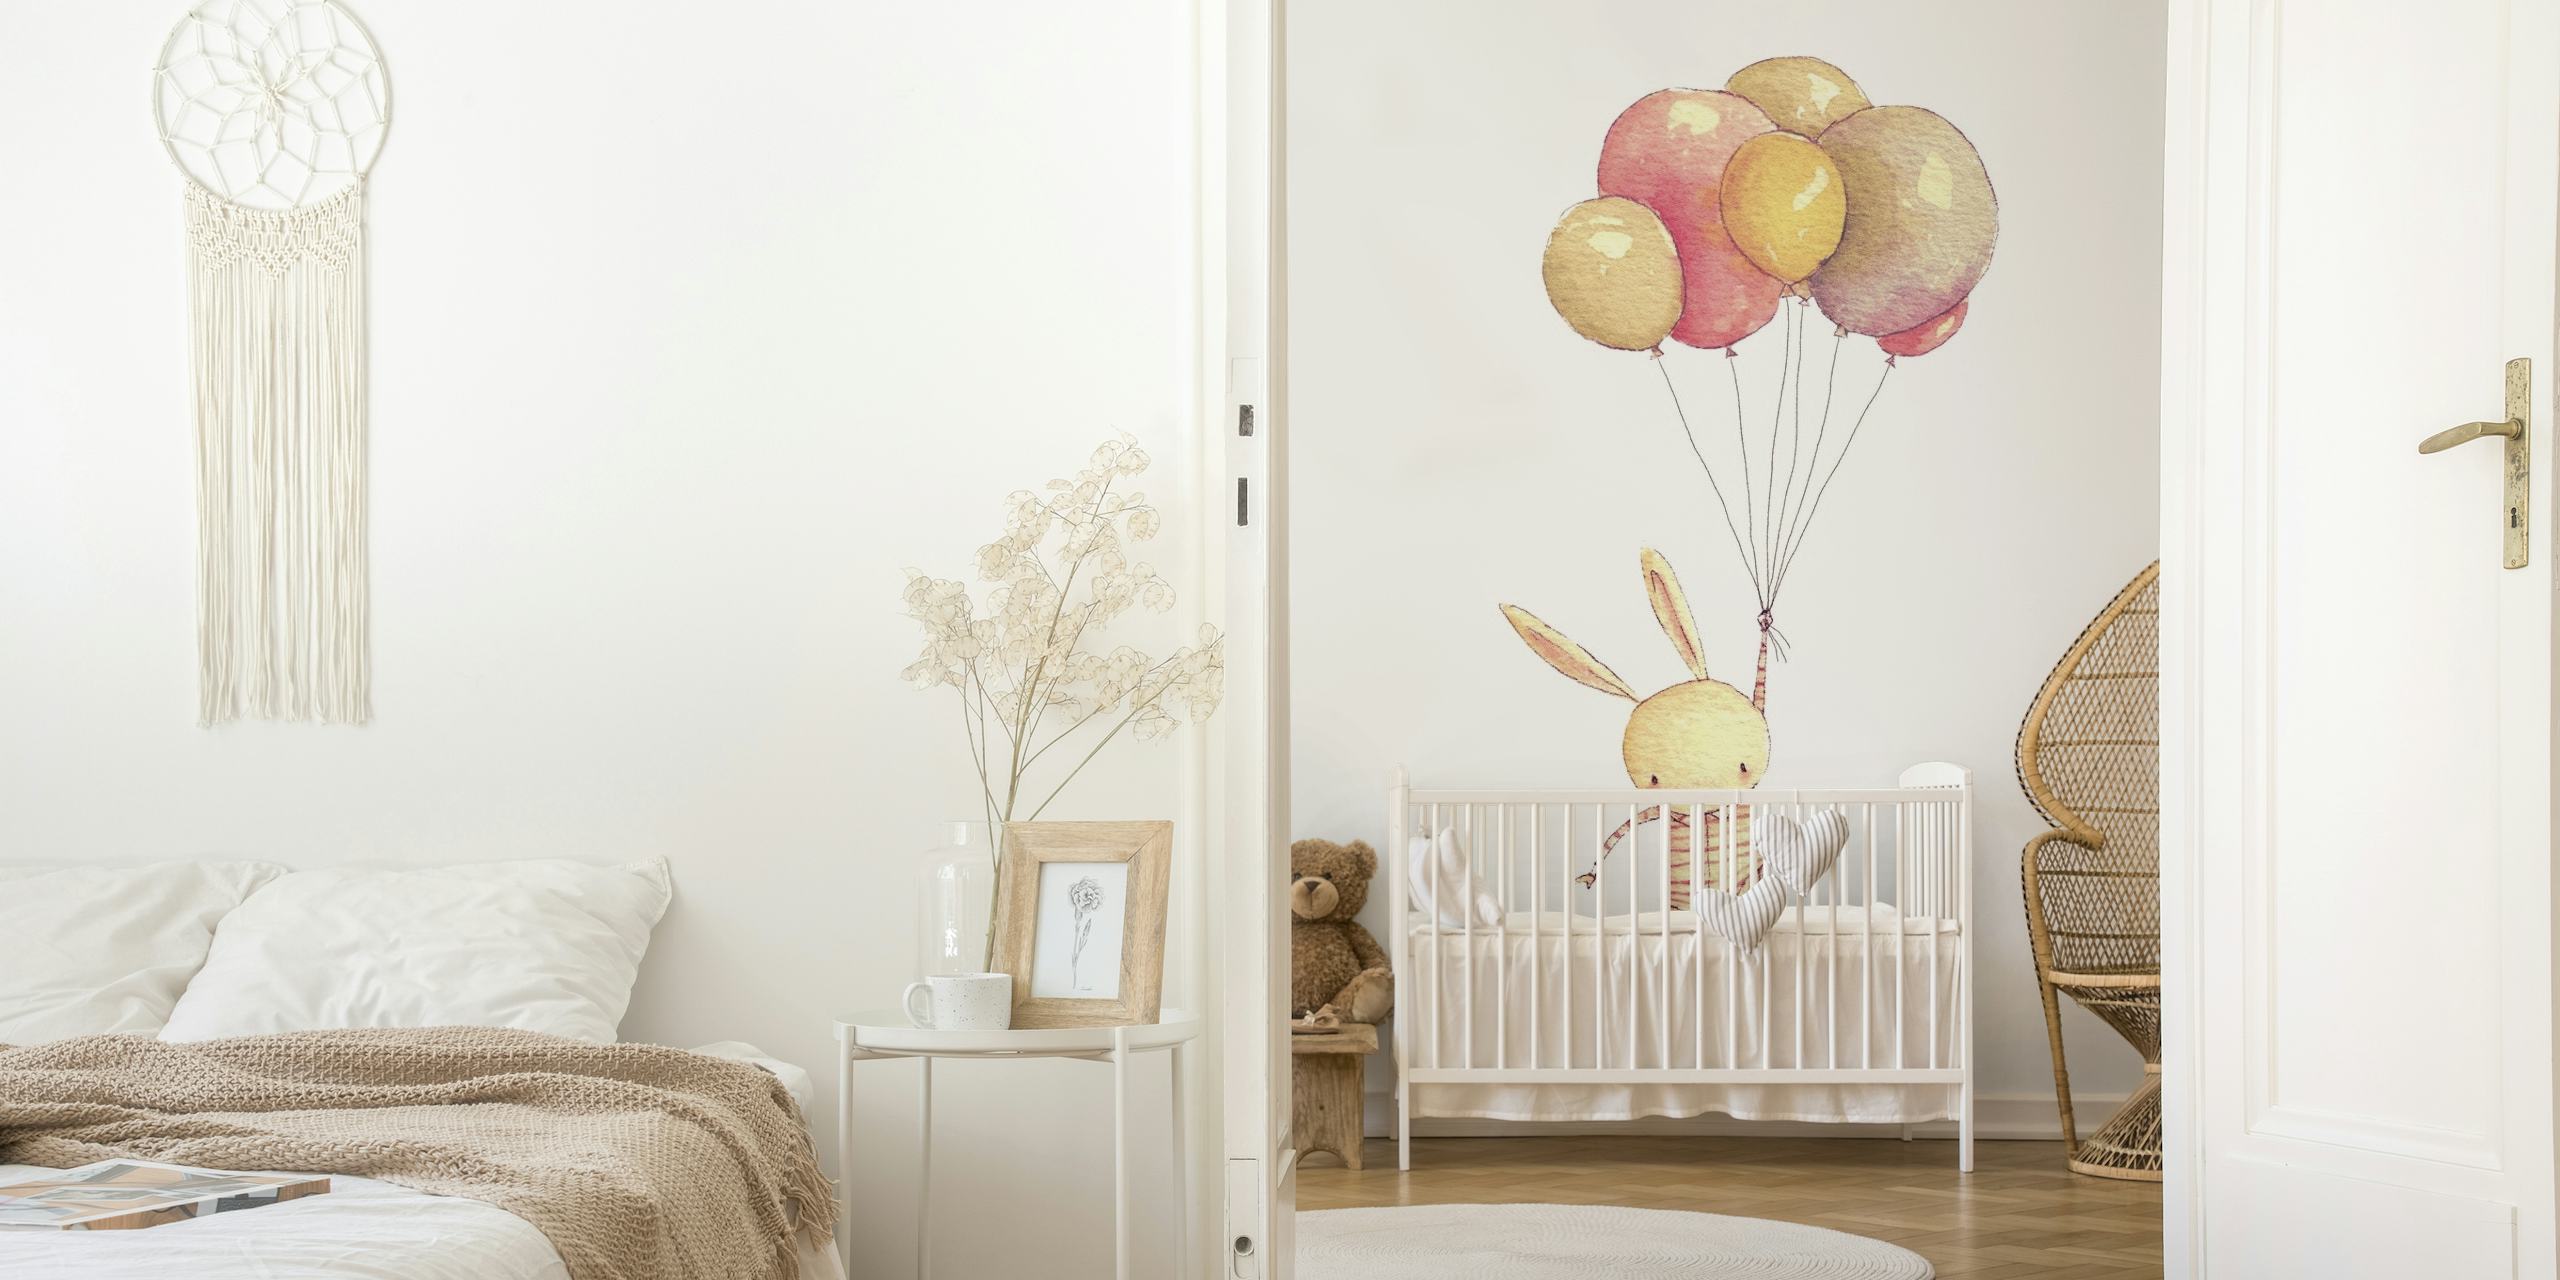 Illustratie van een konijntje vastgebonden aan pastelkleurige ballonnen die naar boven zweven in een fotobehang.